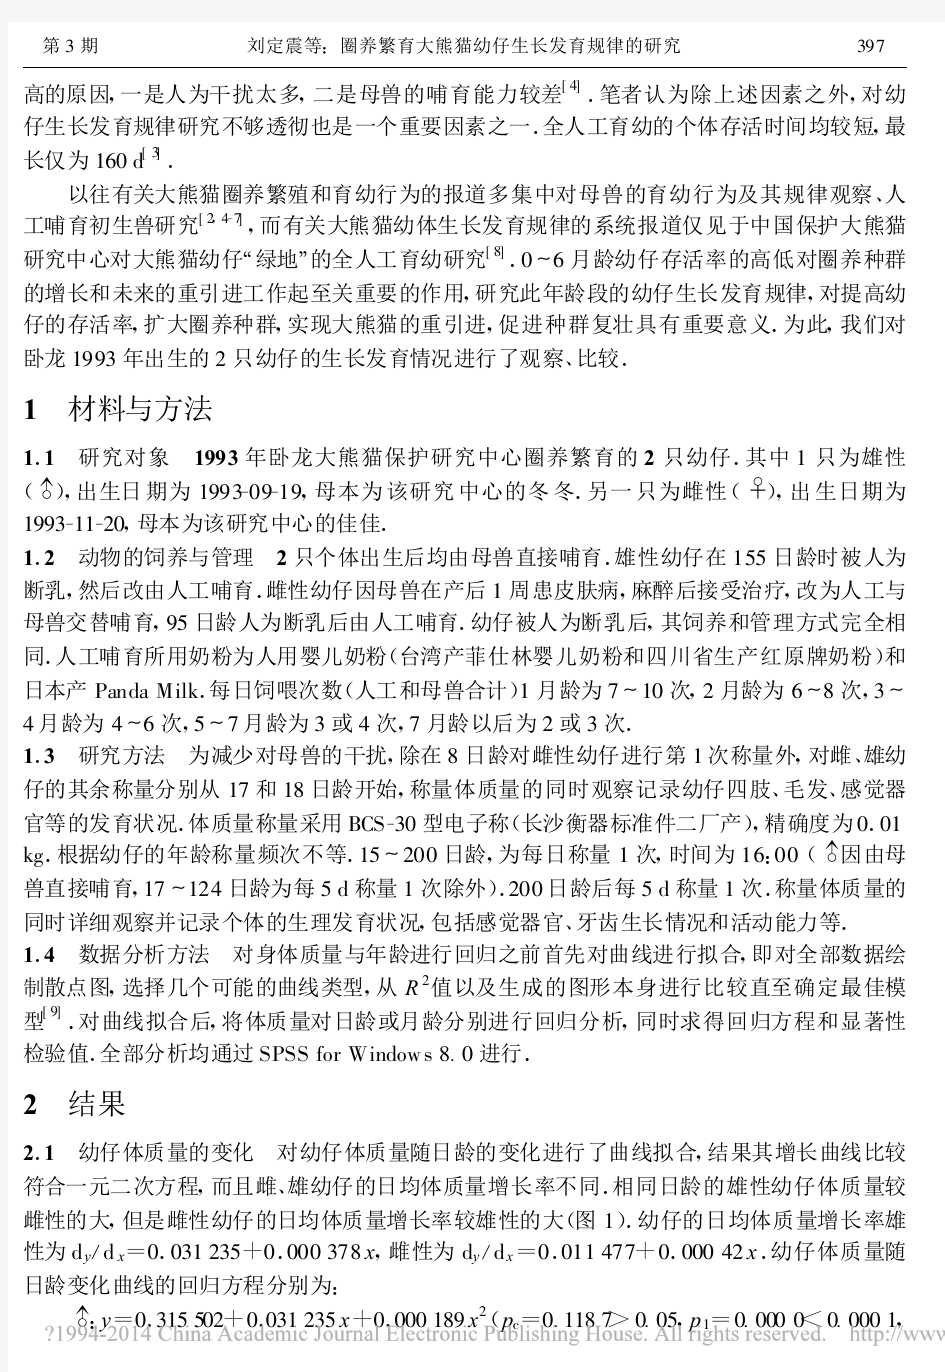 圈养繁育大熊猫幼仔生长发育规律的研究_刘定震